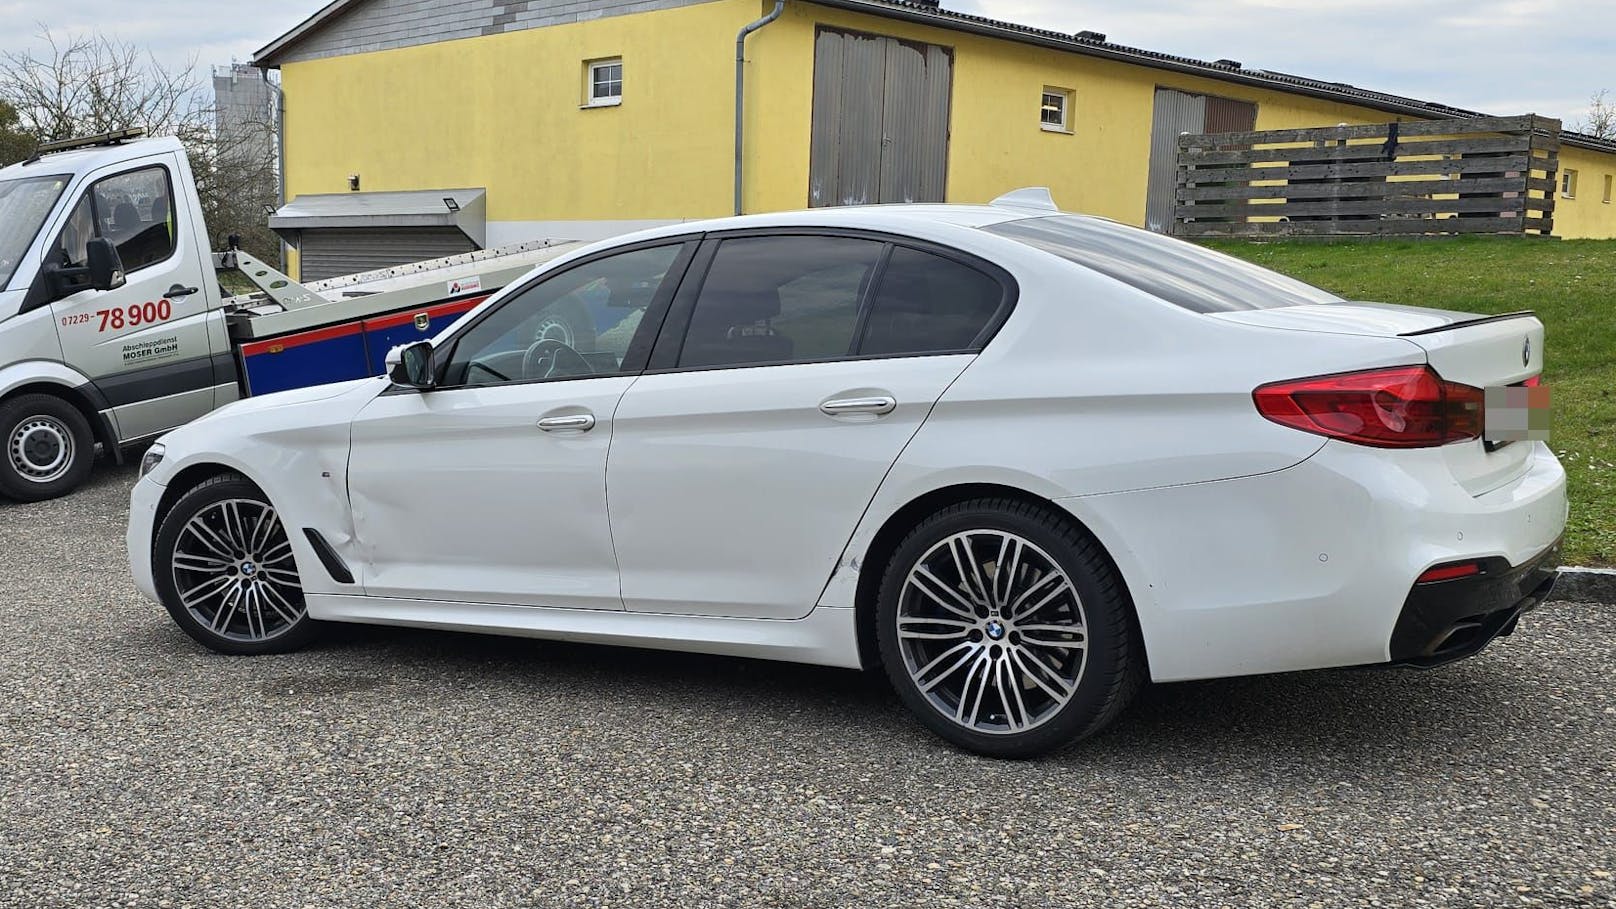 Luxus-BMW beschlagnahmt, Raser fuhr mit Leihauto weiter